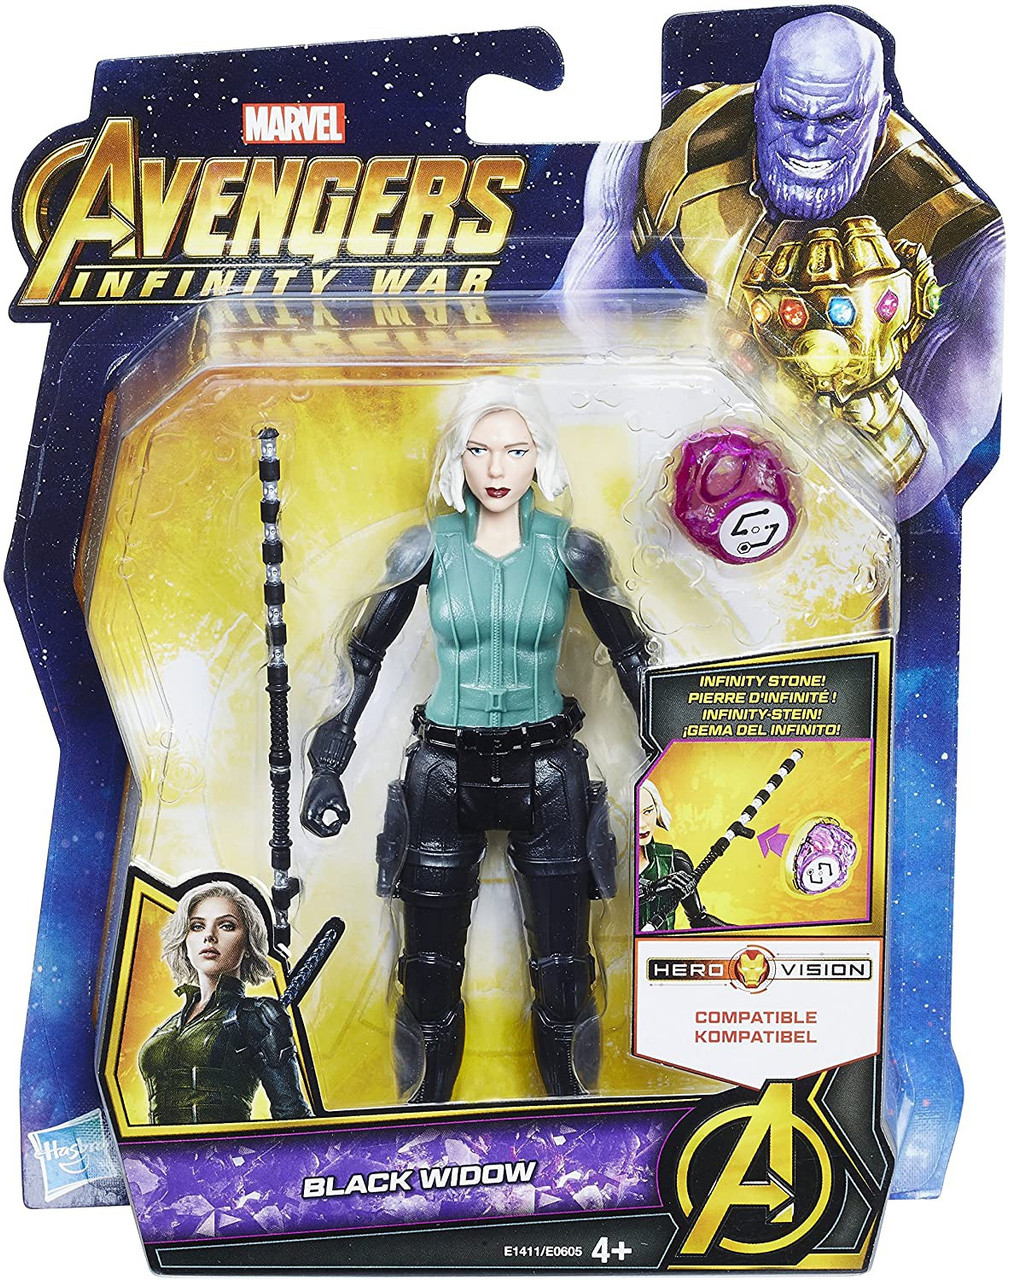 Marvel Avengers Infinity War Black Widow 6 Action Figure